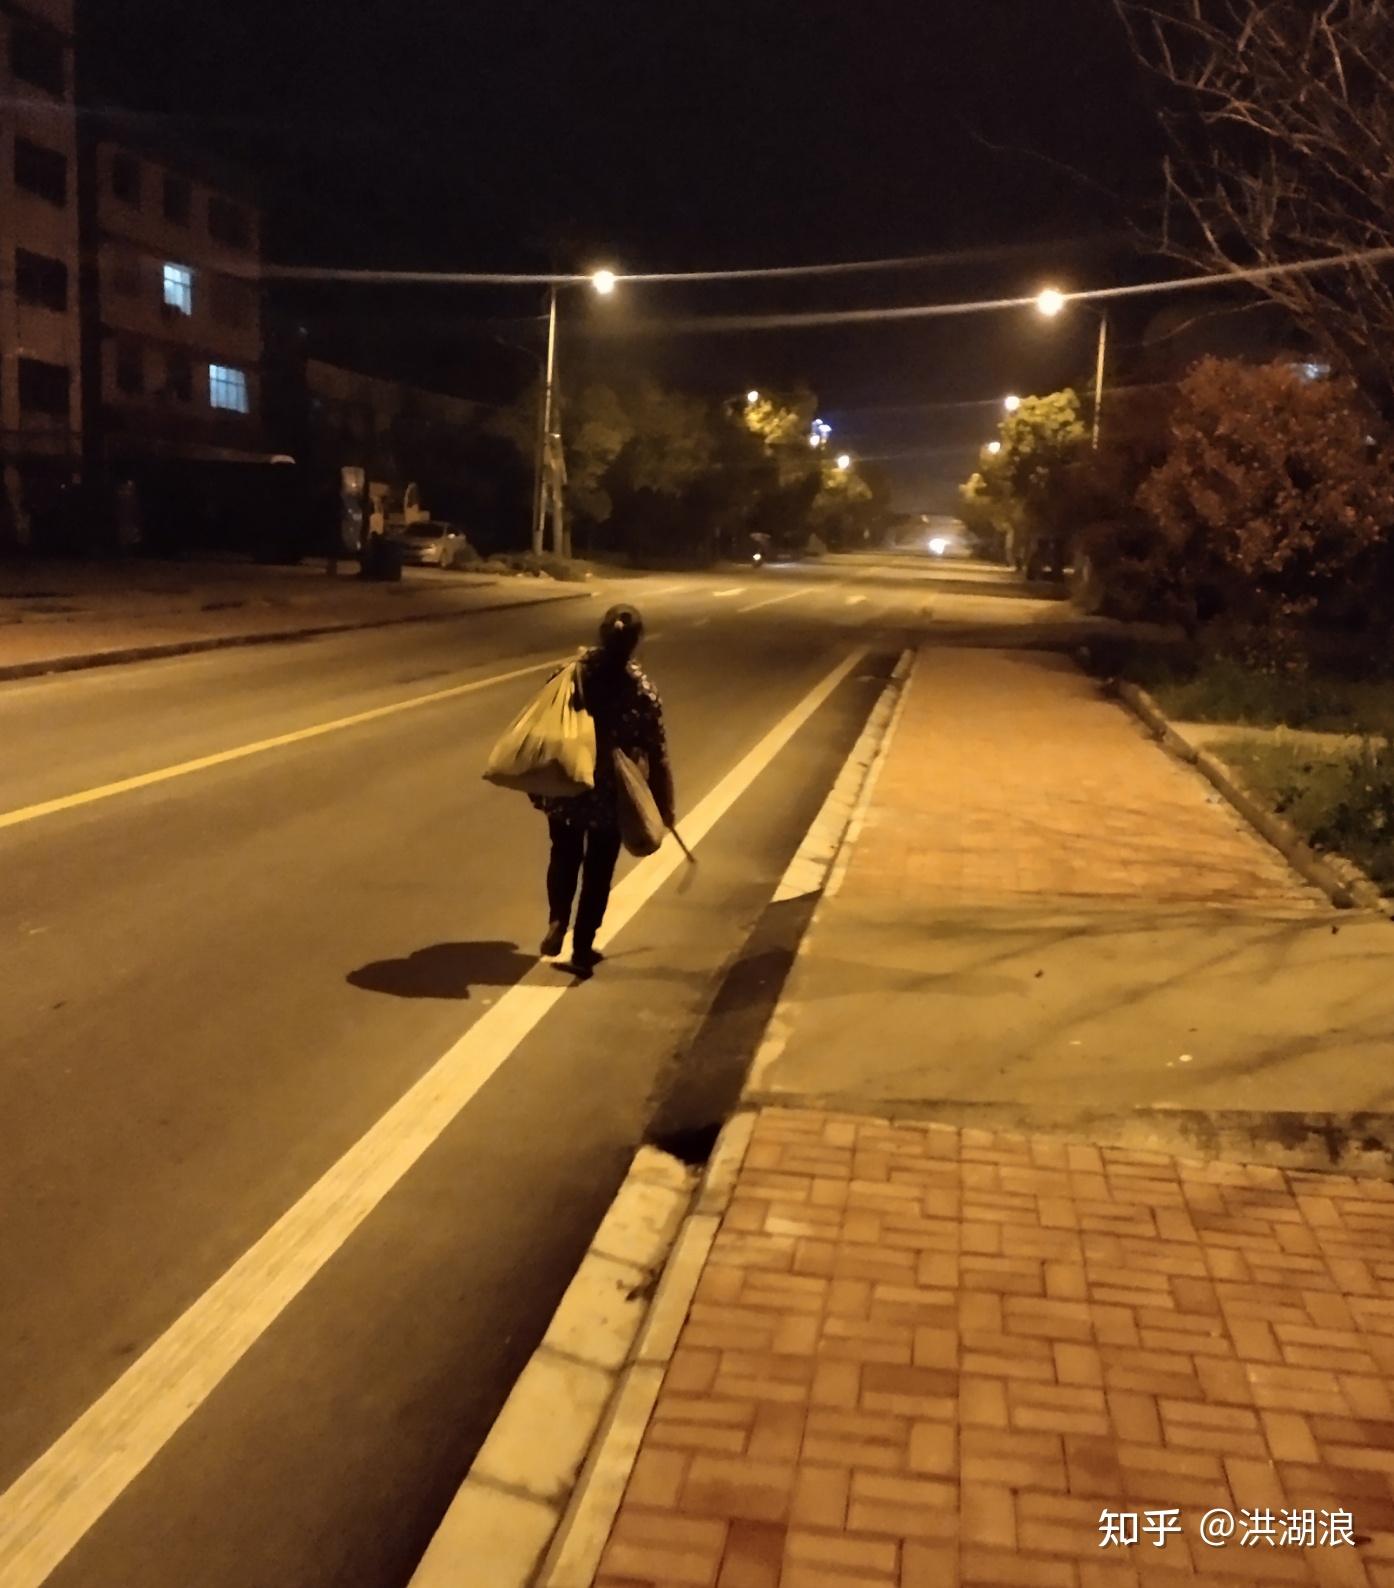 夜晚一个人走路的图片图片